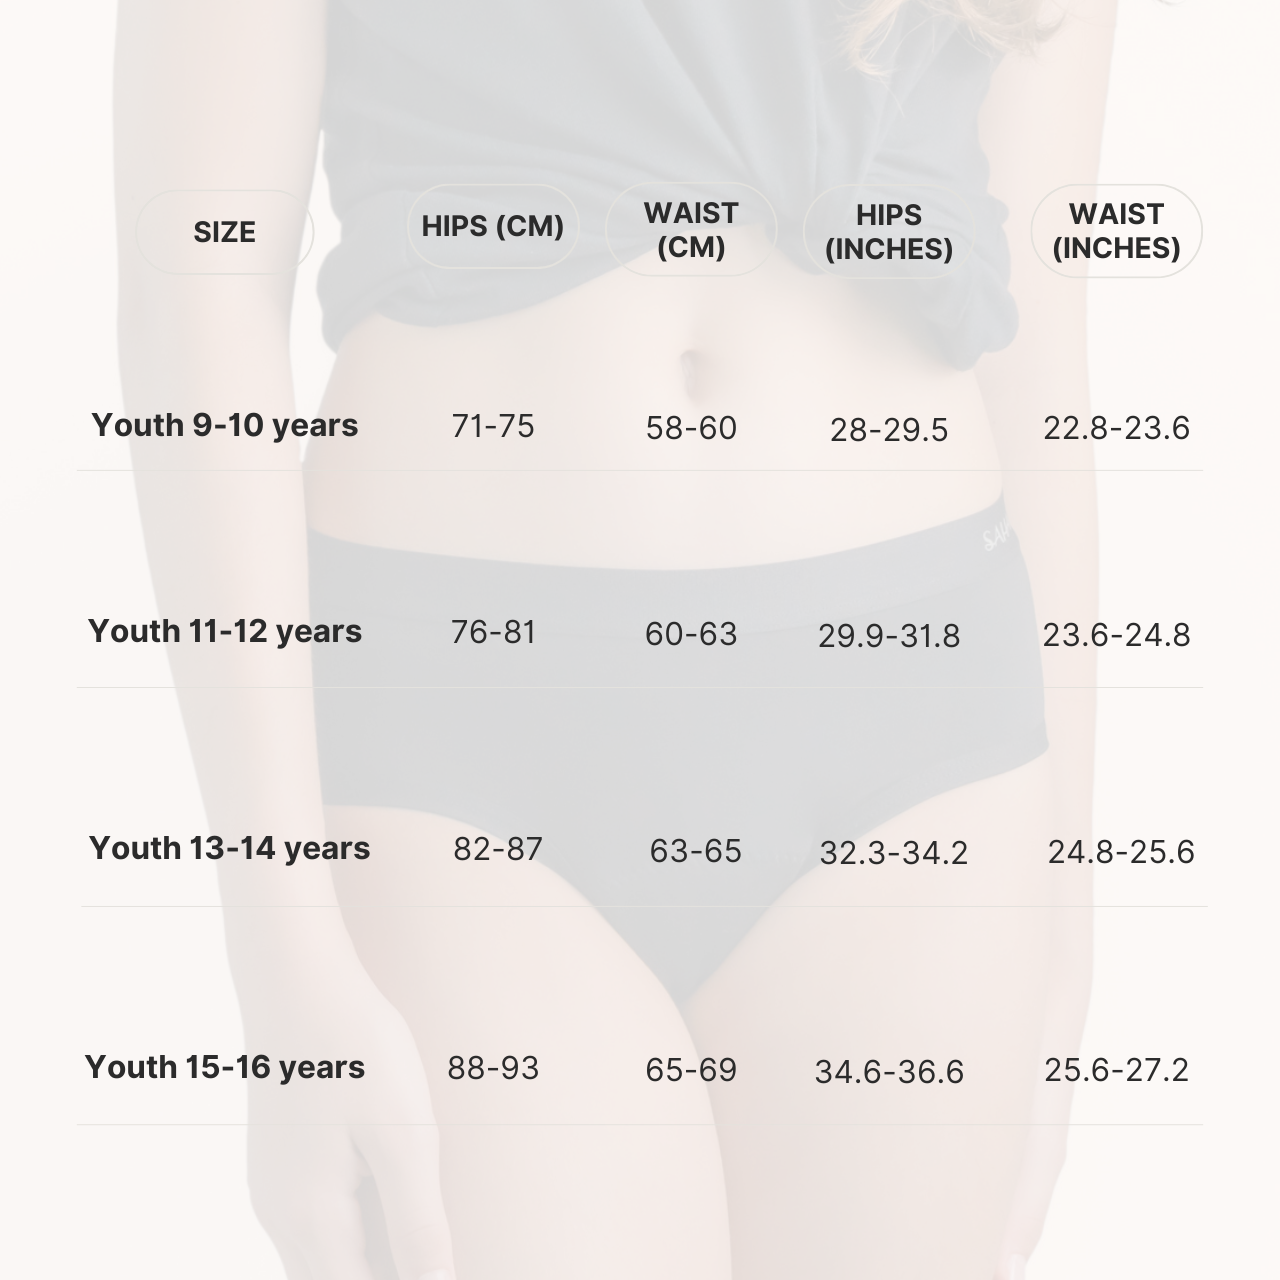 ملابس داخلية مقاومة للدورة الشهرية من صحارى للمراهقات، قدرة امتصاص ثقيلة - للأعمار من 9 إلى 10 سنوات